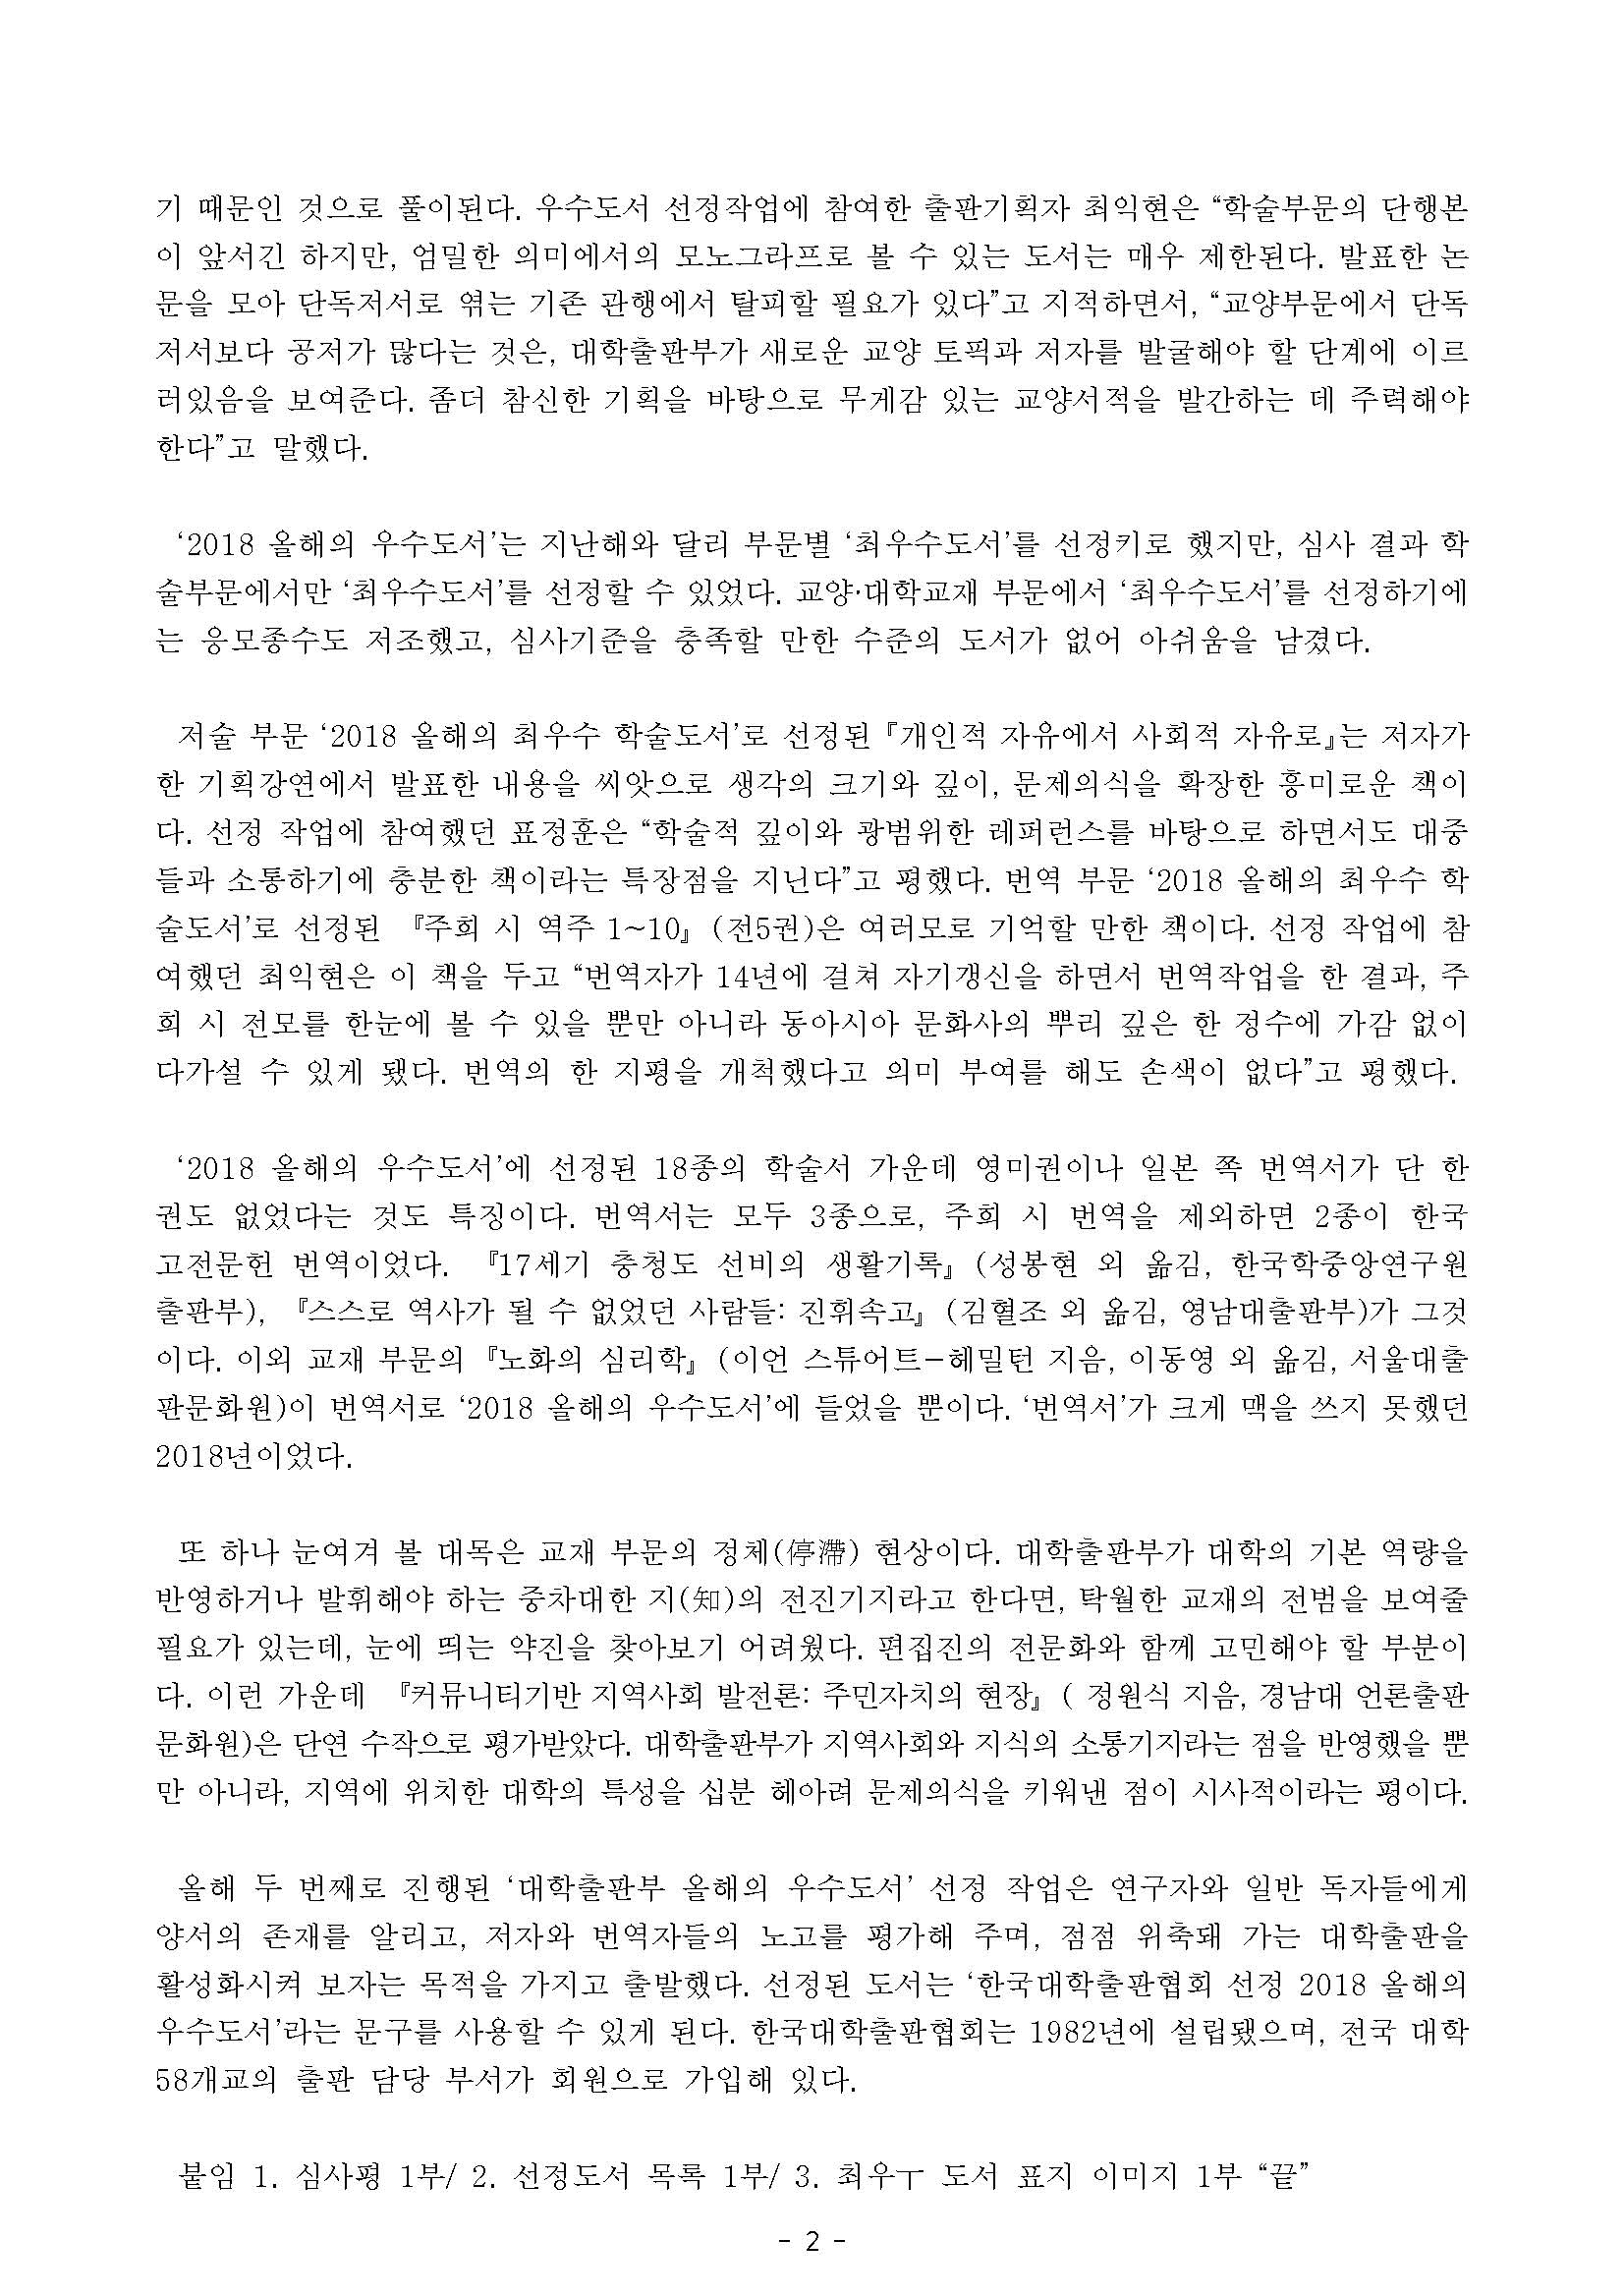 한국대학출판협회 보도자료-2018 올해의 우수도서 선정 결과-배포본_페이지_2.jpg